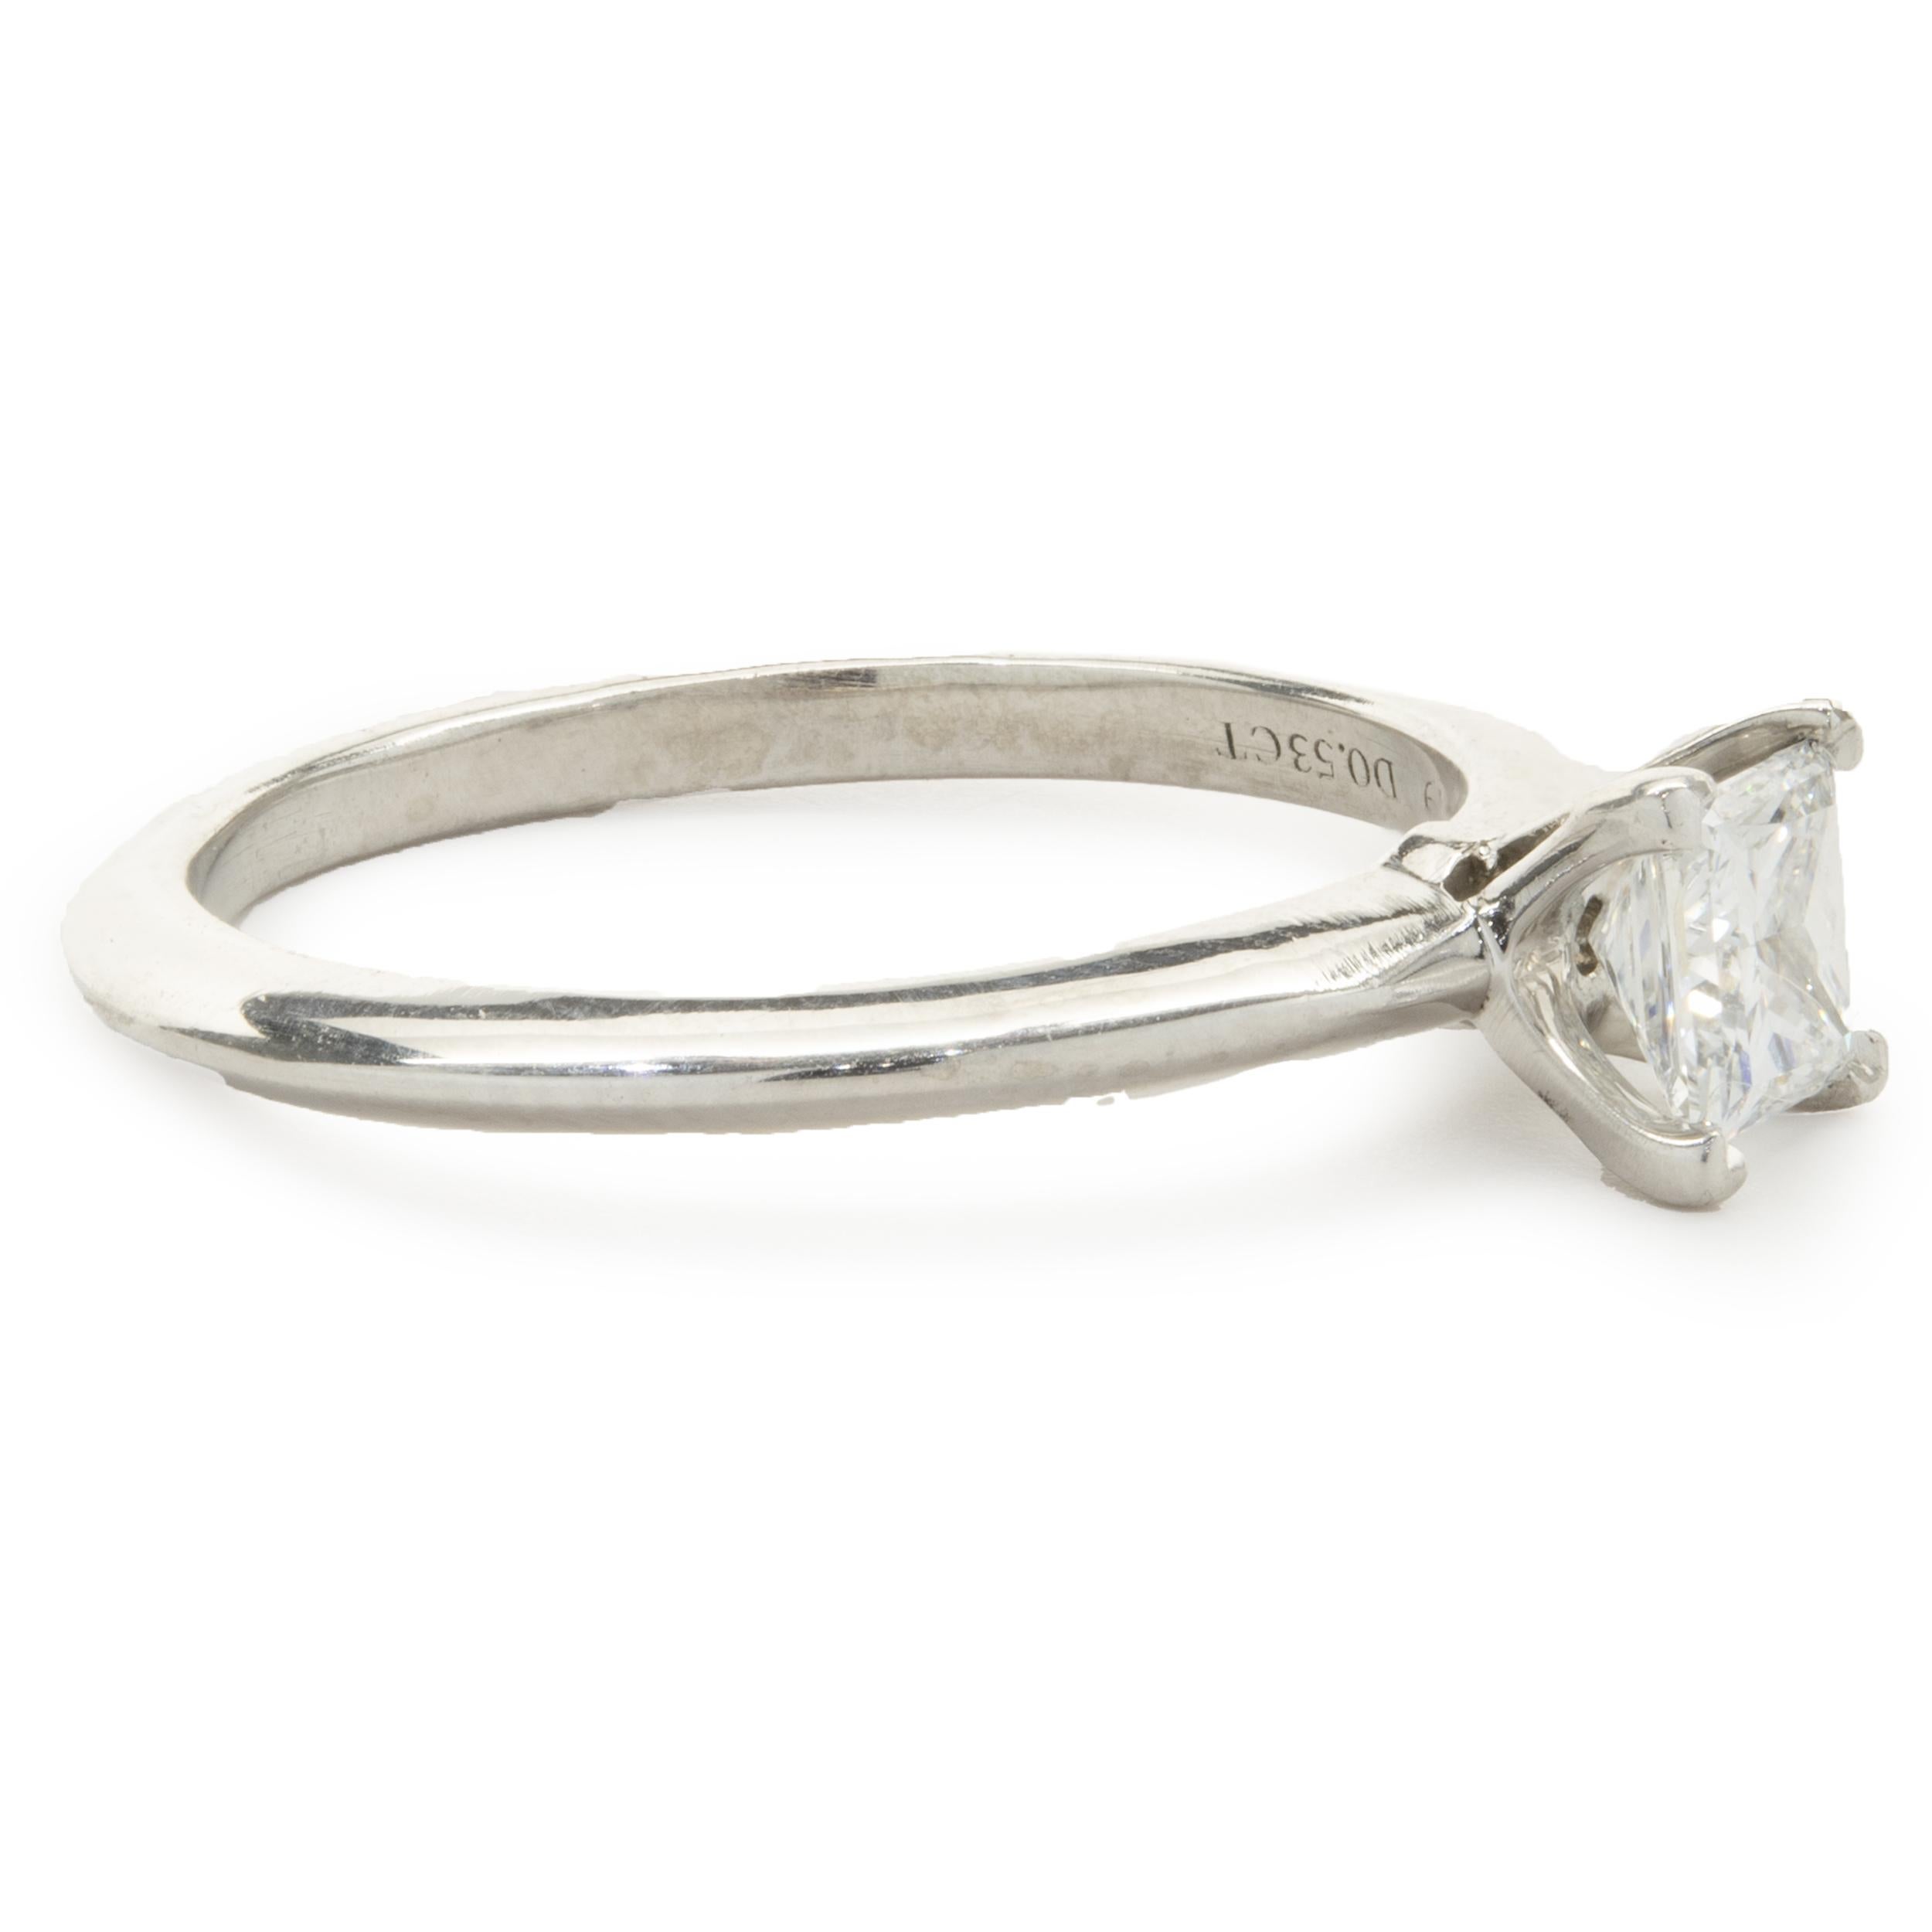 Designer: Tiffany & Co. 
Material: Platin
Diamant: 1 Prinzess-Schliff = .53ct
Farbe: H
Klarheit: VS2
Größe: 7
Abmessungen: Die Ringspitze ist 5,70 mm breit
Gewicht: 4,64 Gramm